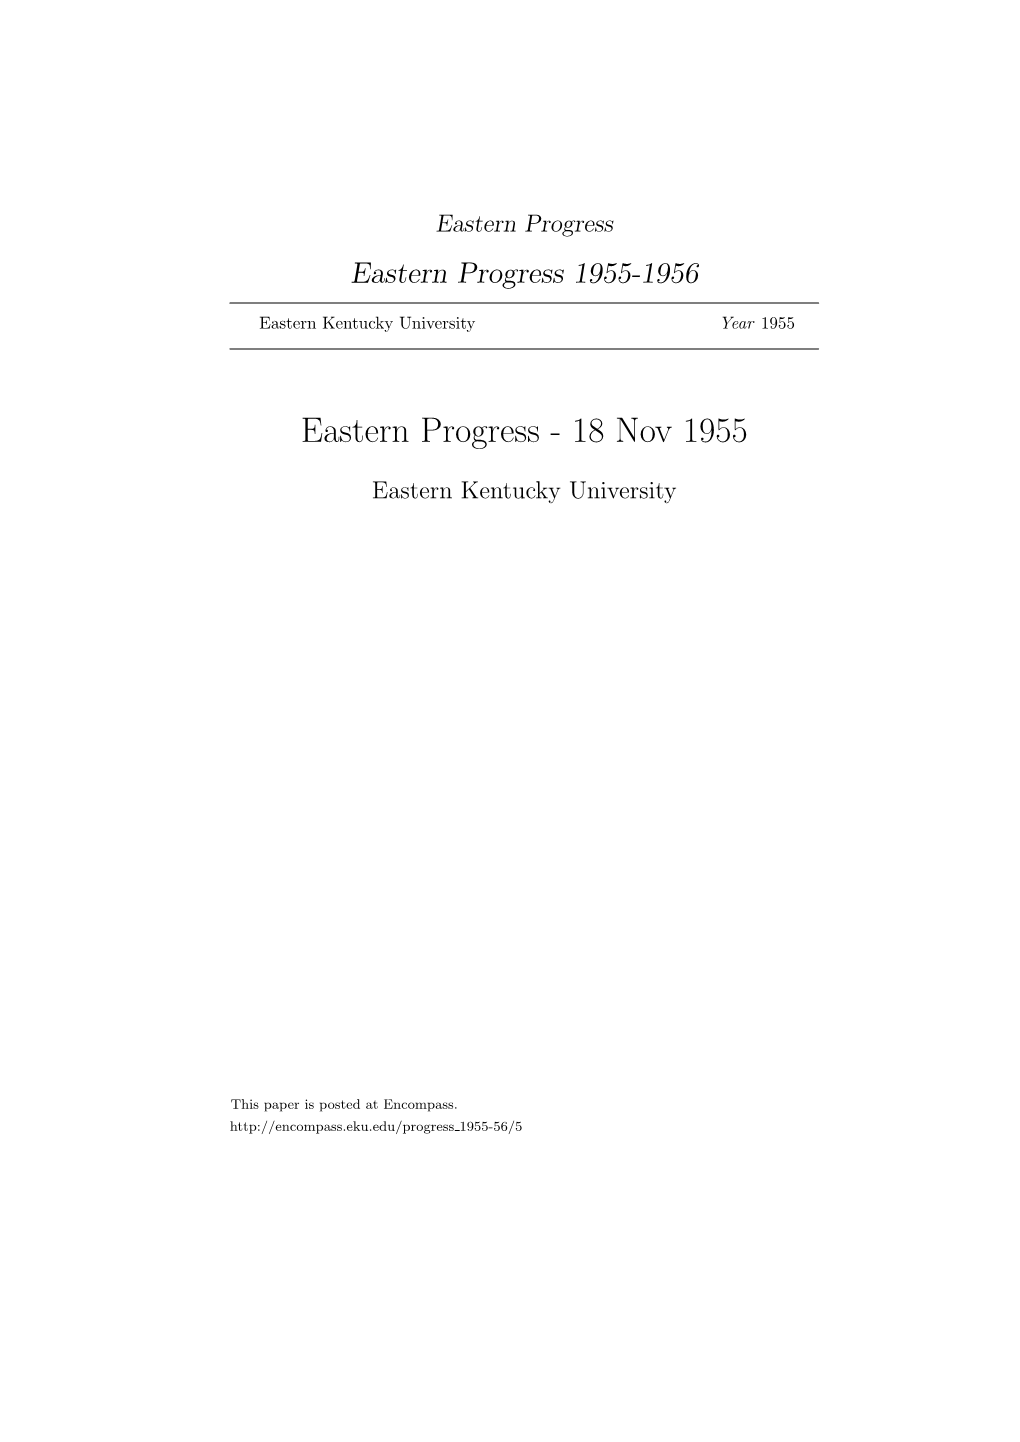 Eastern Progress Eastern Progress 1955-1956